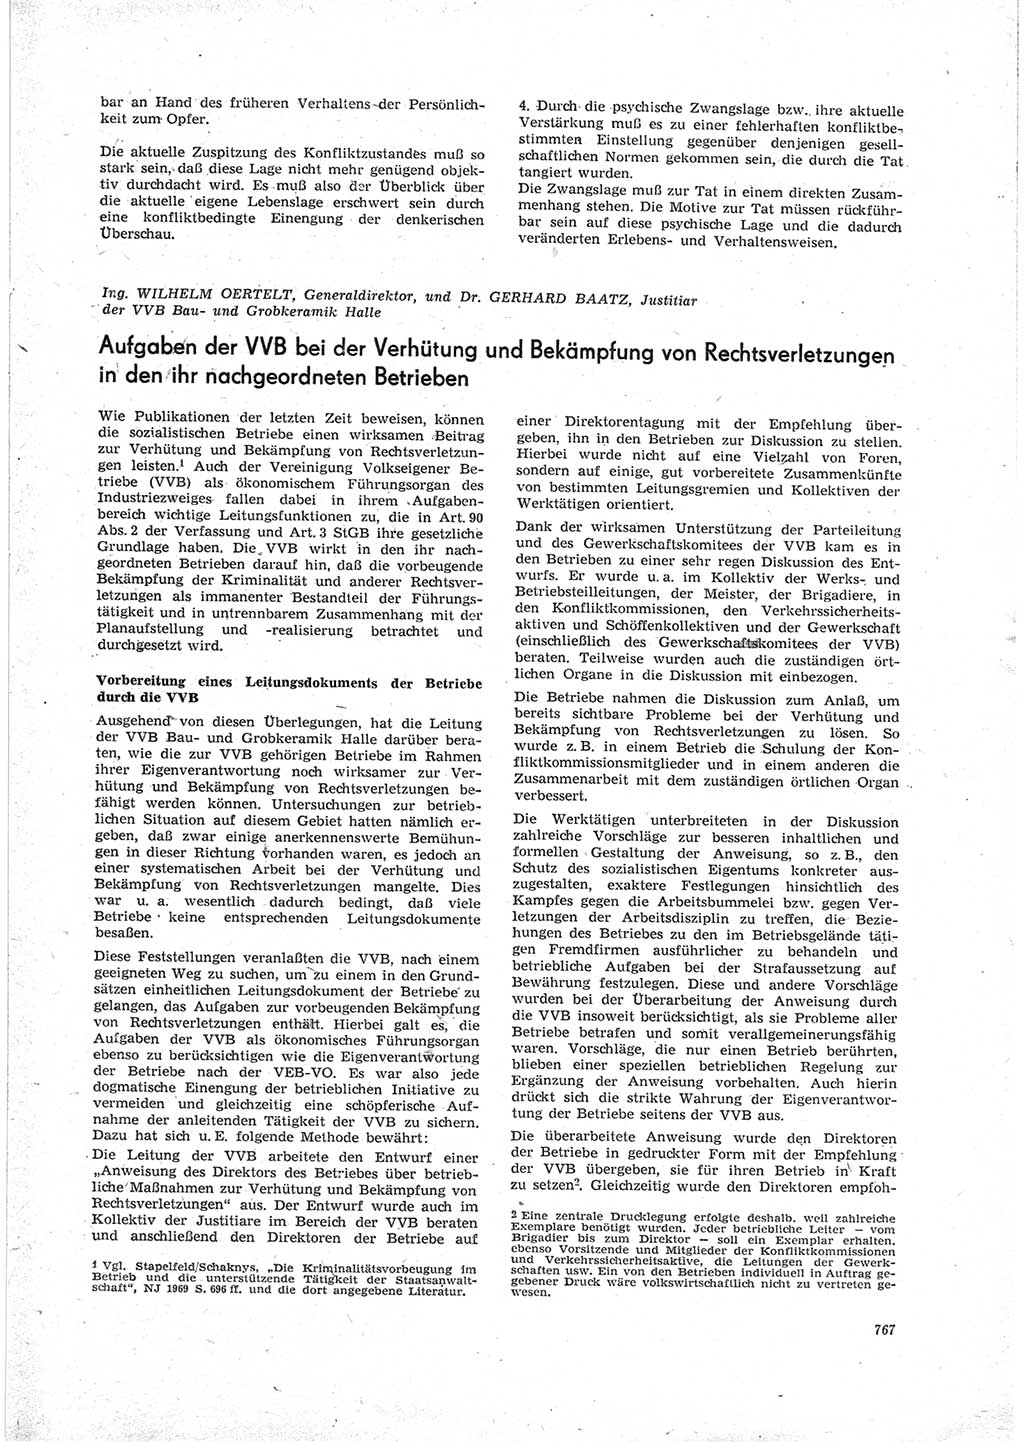 Neue Justiz (NJ), Zeitschrift für Recht und Rechtswissenschaft [Deutsche Demokratische Republik (DDR)], 23. Jahrgang 1969, Seite 767 (NJ DDR 1969, S. 767)